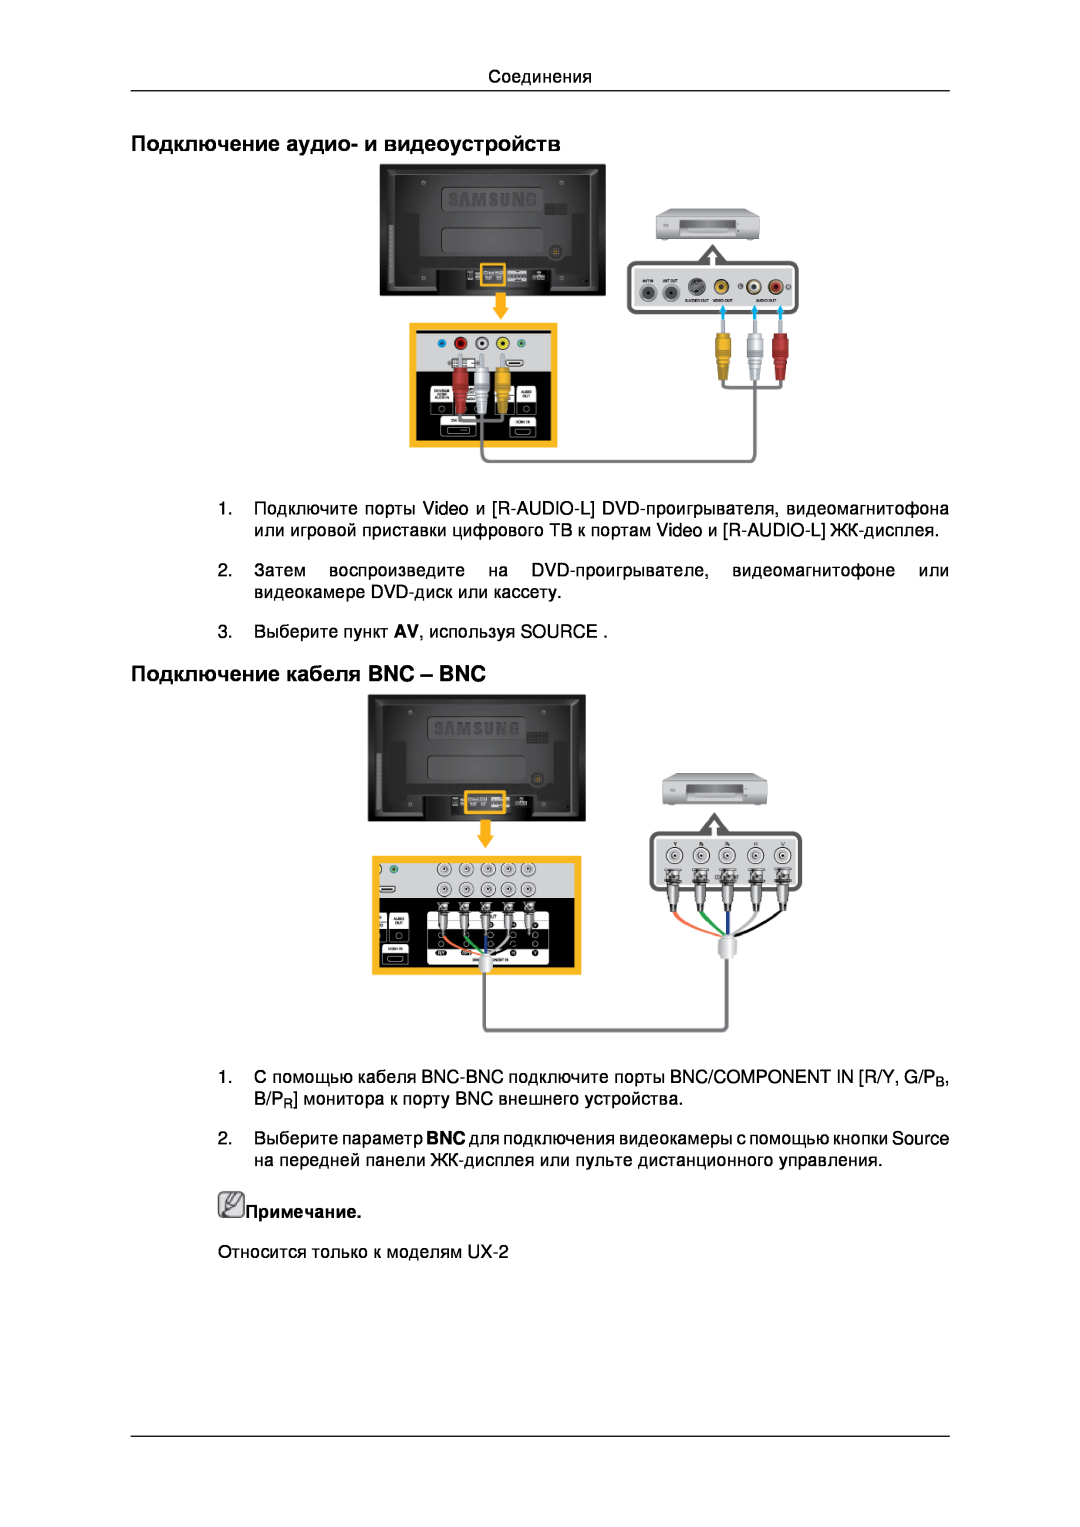 Samsung LH40MRPLBF/EN, LH40MRTLBC/EN manual Подключение аудио- и видеоустройств, Подключение кабеля BNC - BNC, Примечание 